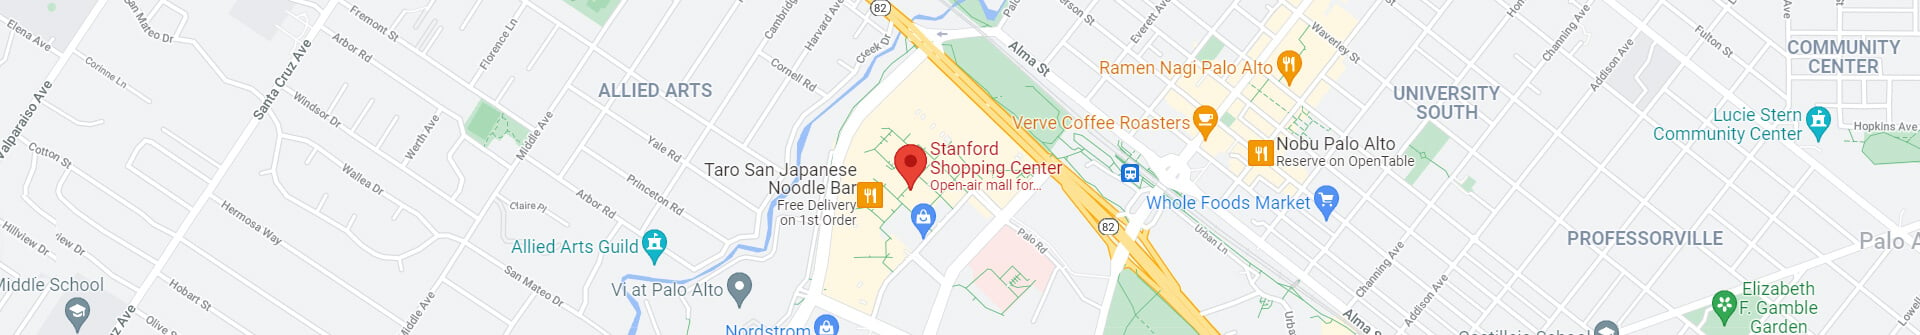 Stanford Shopping Center - Banner Map.jpg